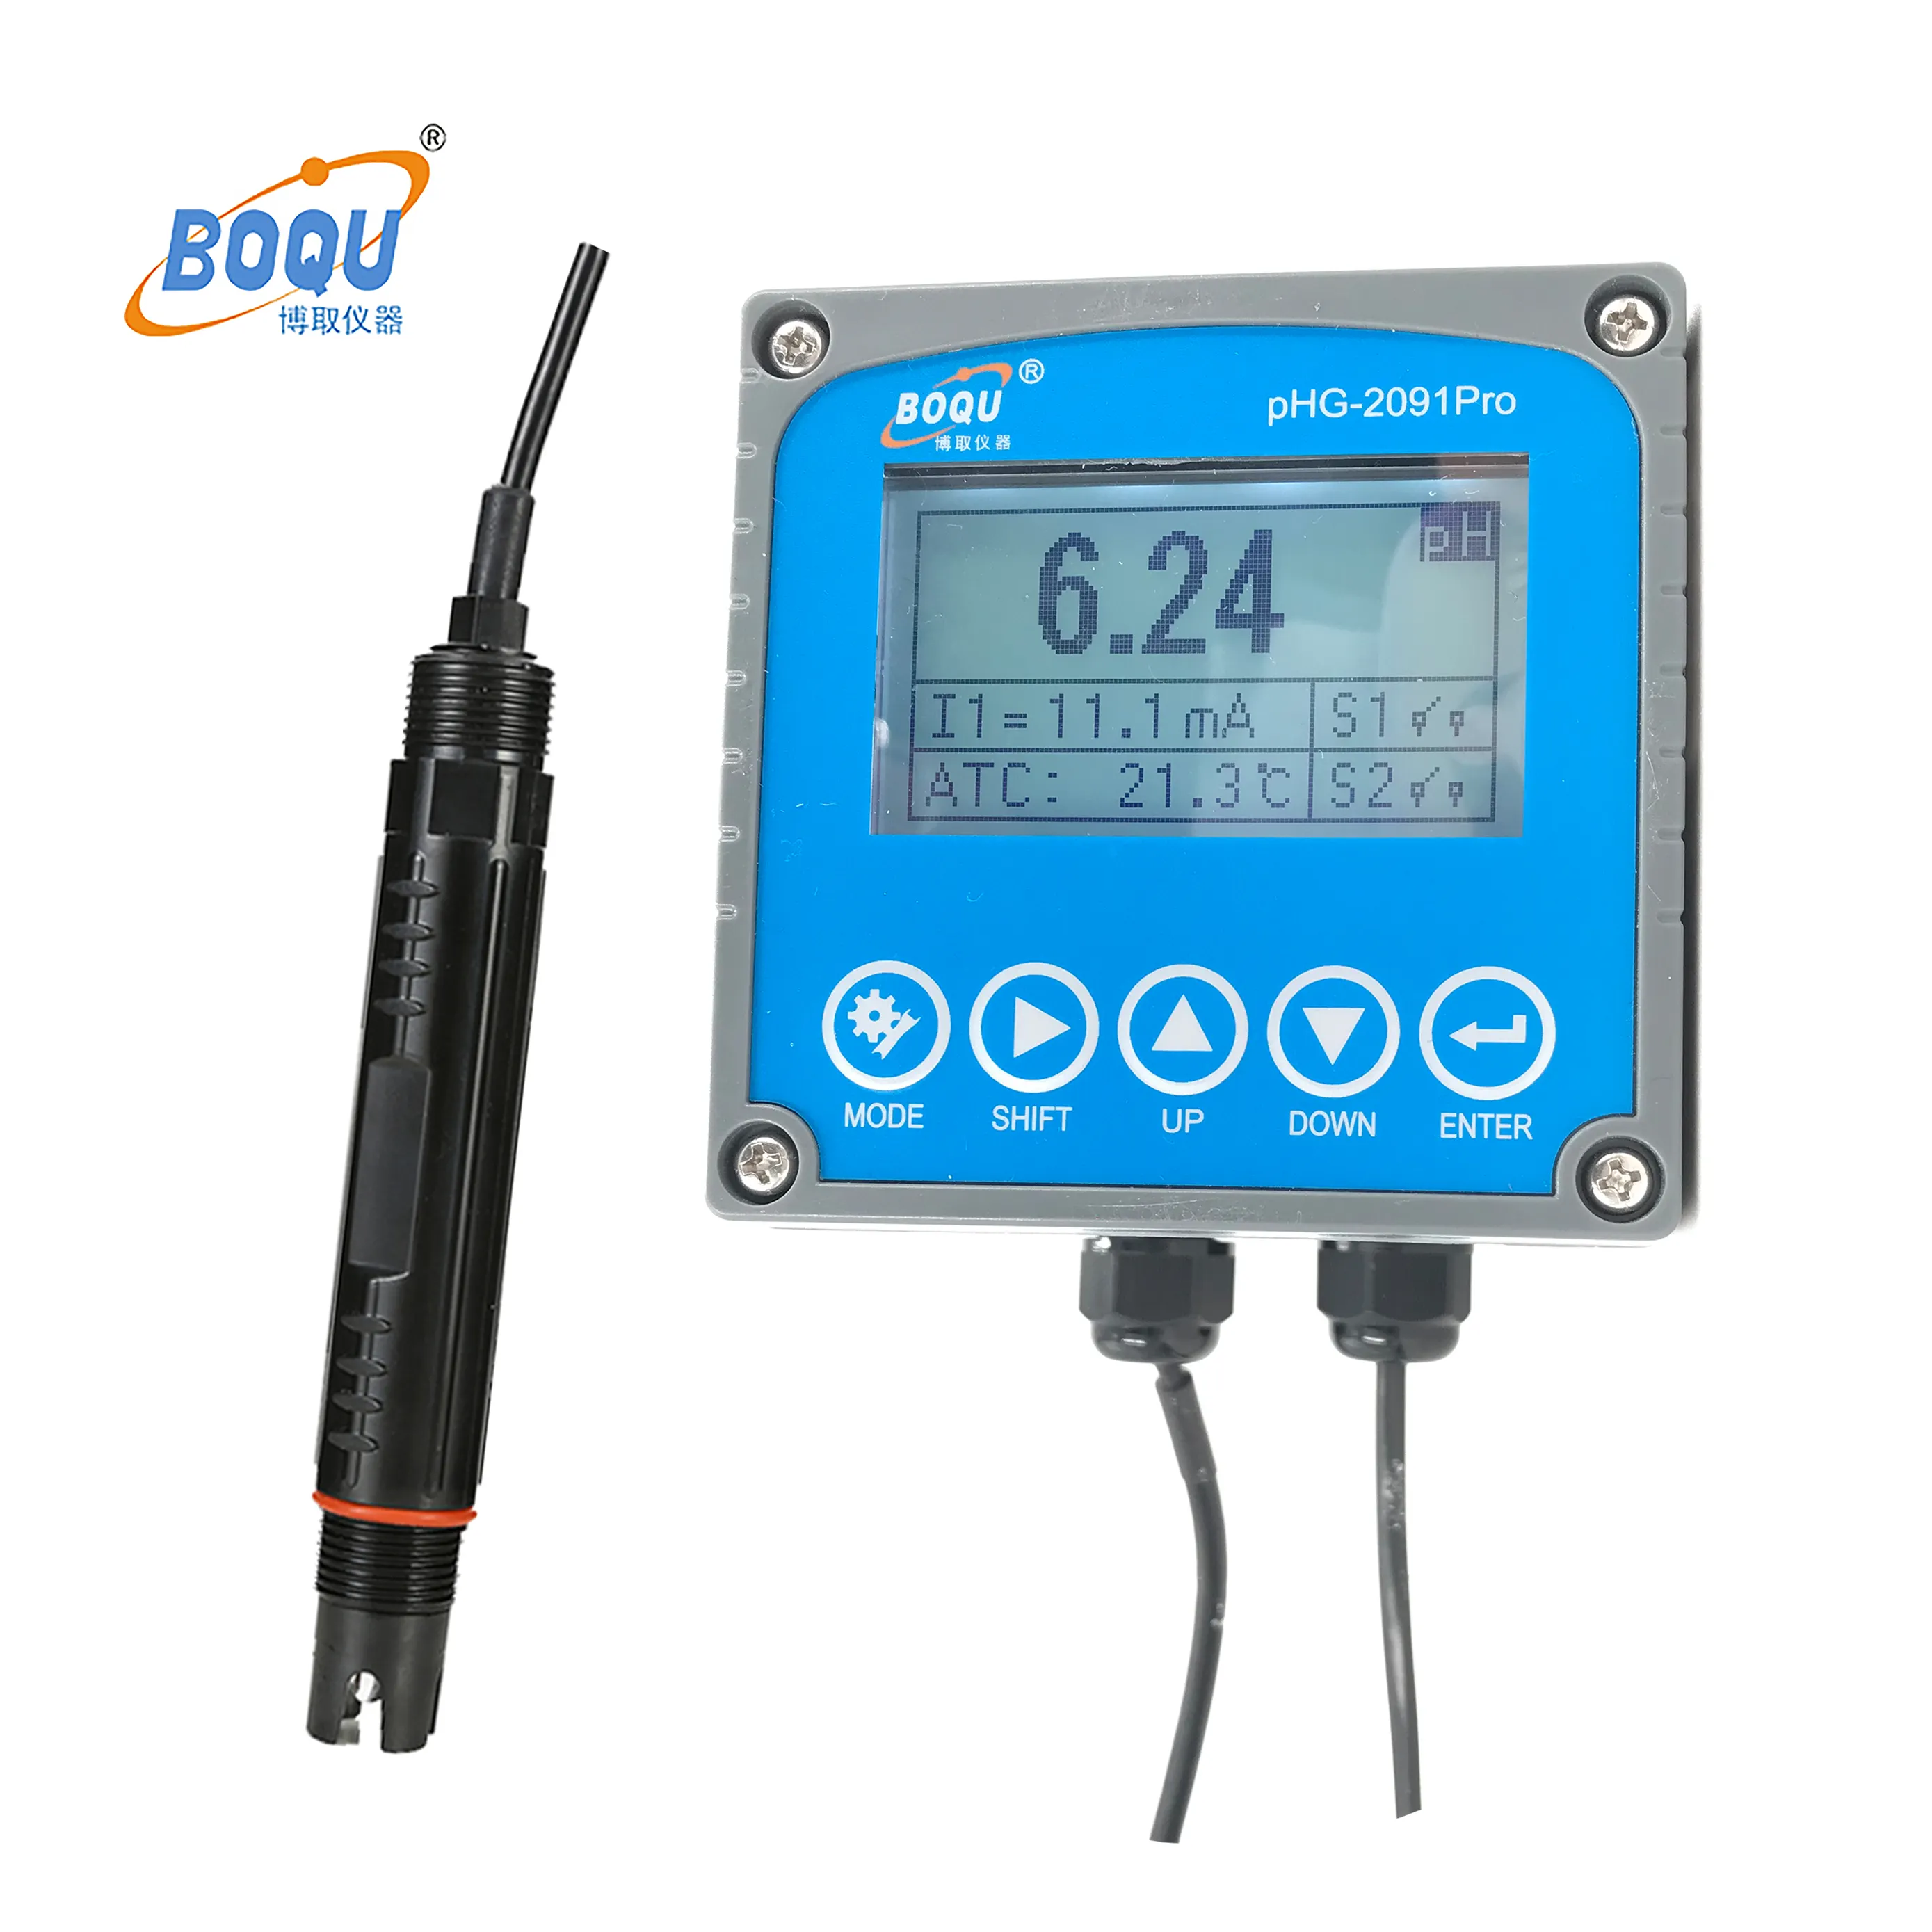 BOQU pHG-2091pro miglior misuratore TDS in vetro e sensore ORP pH e EC sonde analizzatore misuratore di elettrodi per acqua acquista prezzo